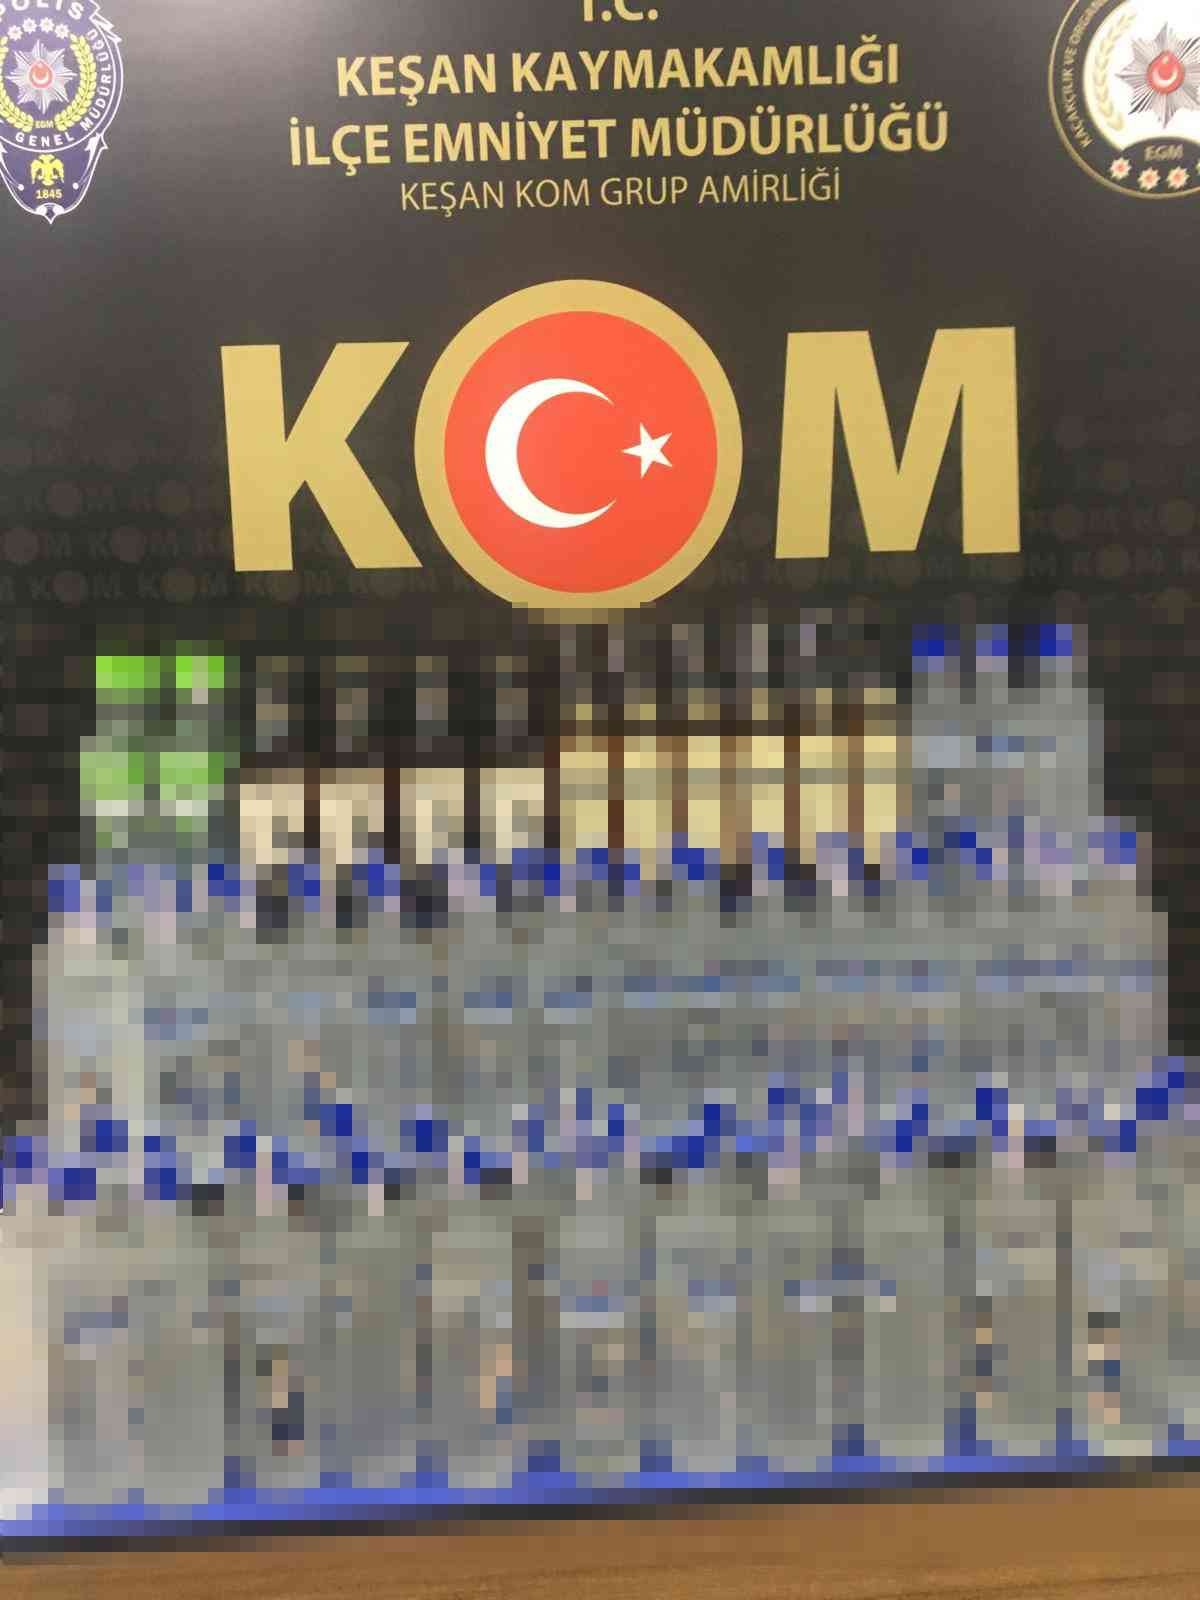 Edirne’de iki araçta 100 şişe kaçak içki ele geçirildi #edirne